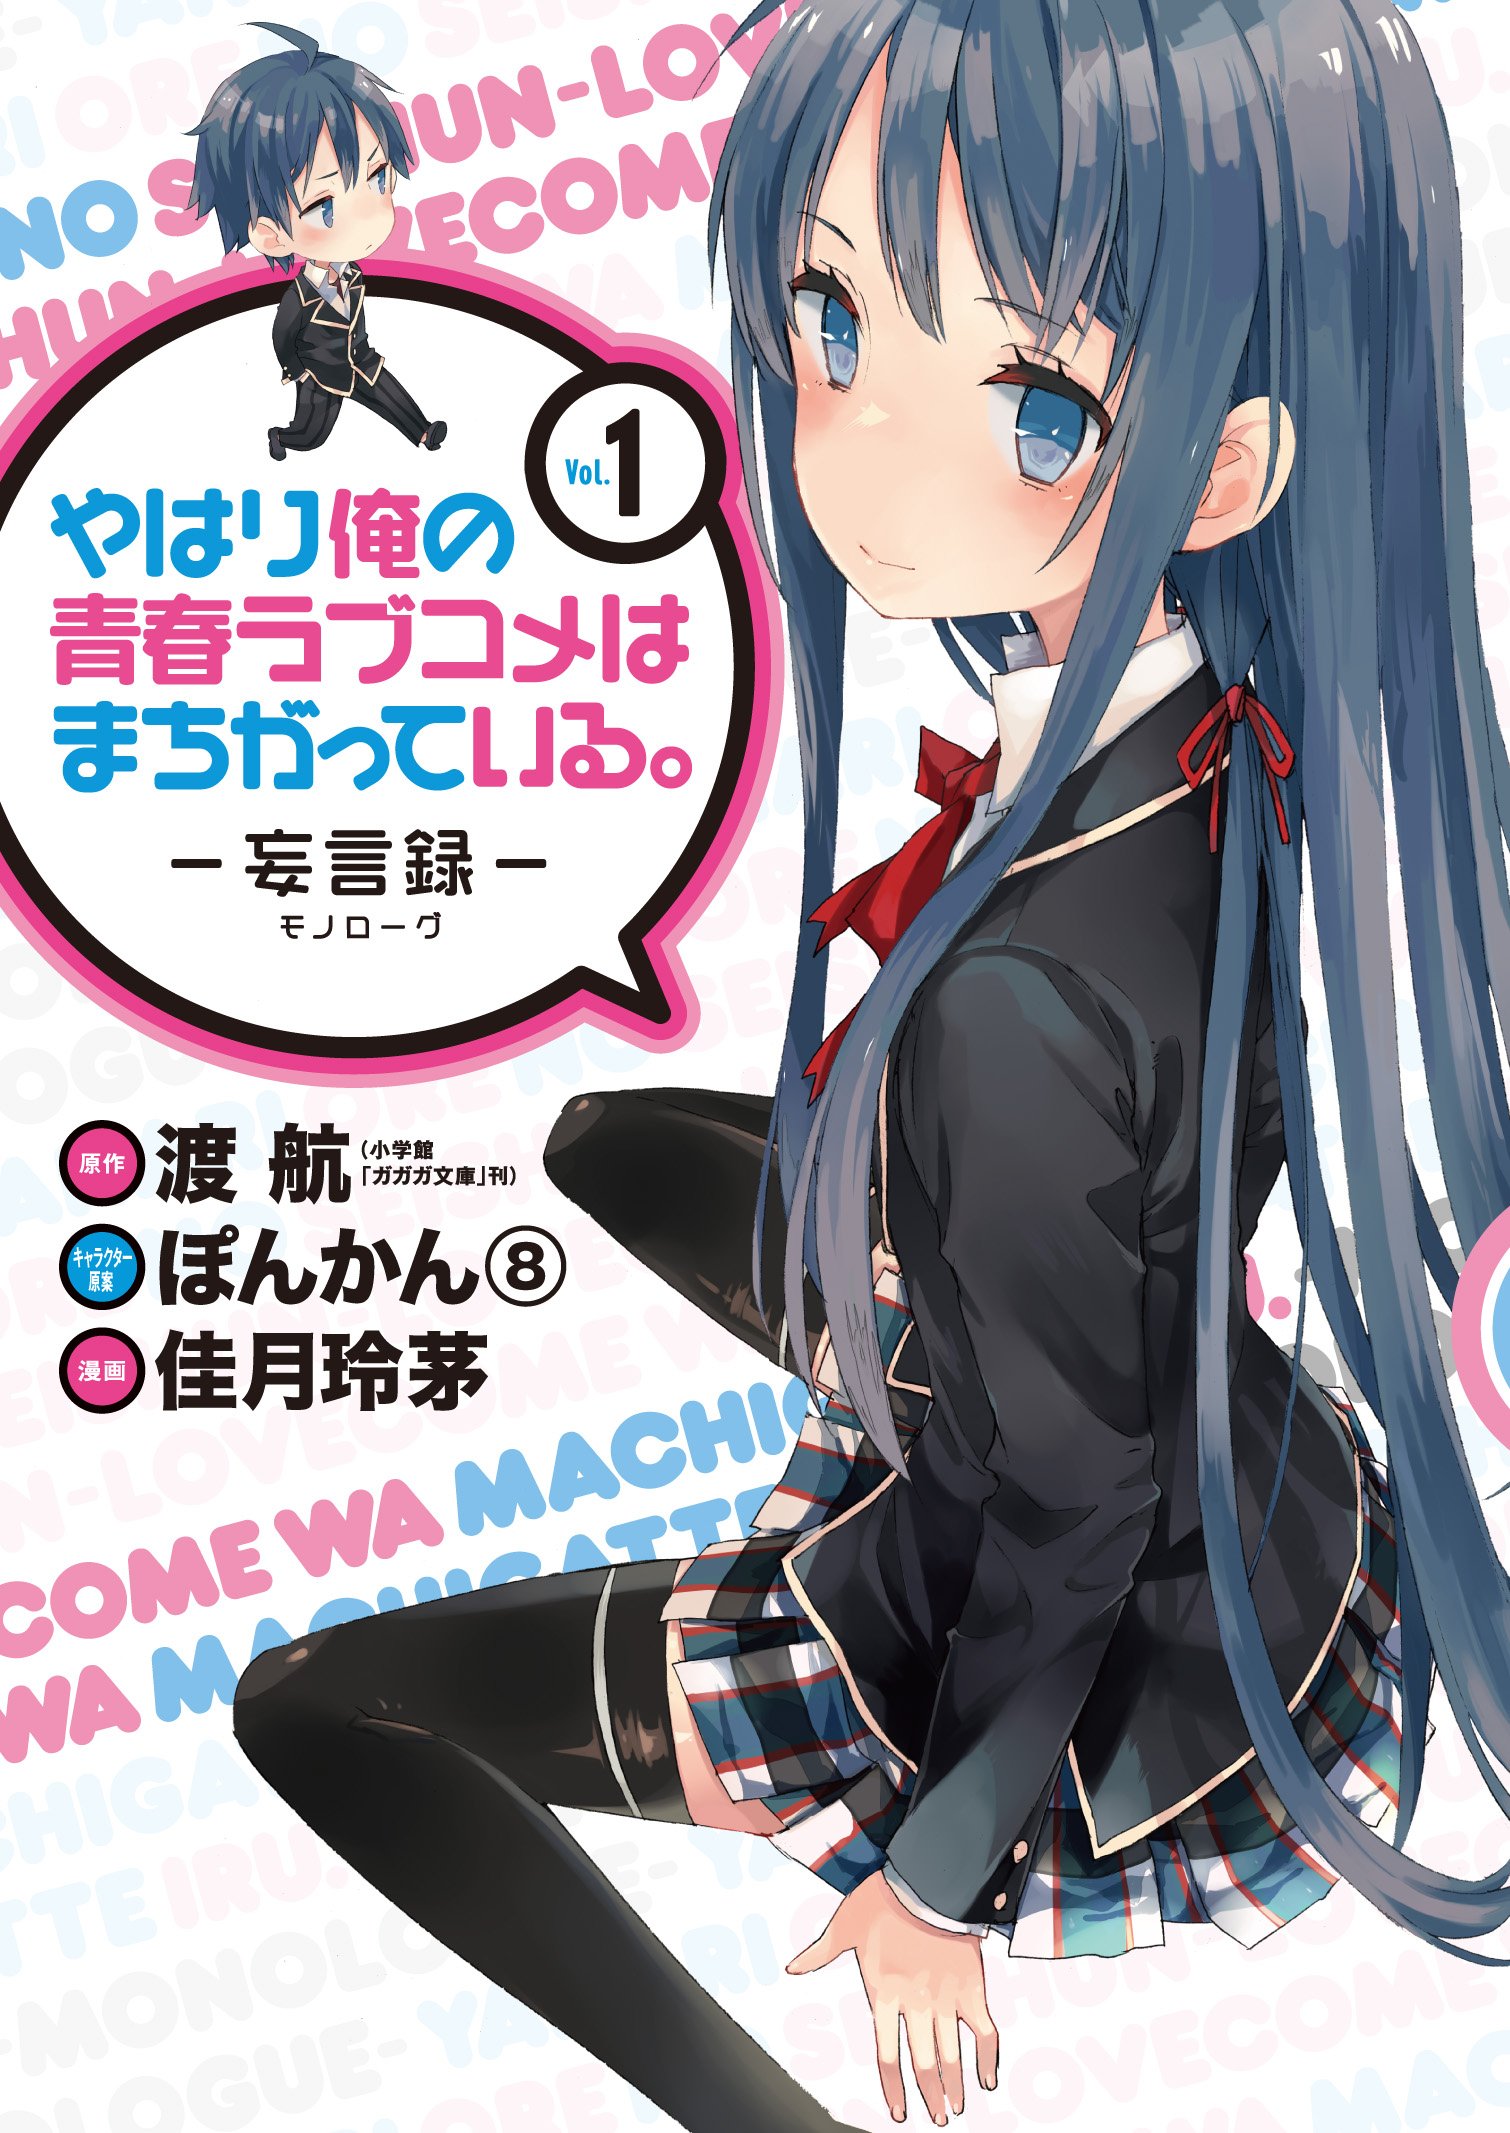 Yahari Ore no Seishun Love Come wa Machigatteiru @comic - MangaDex